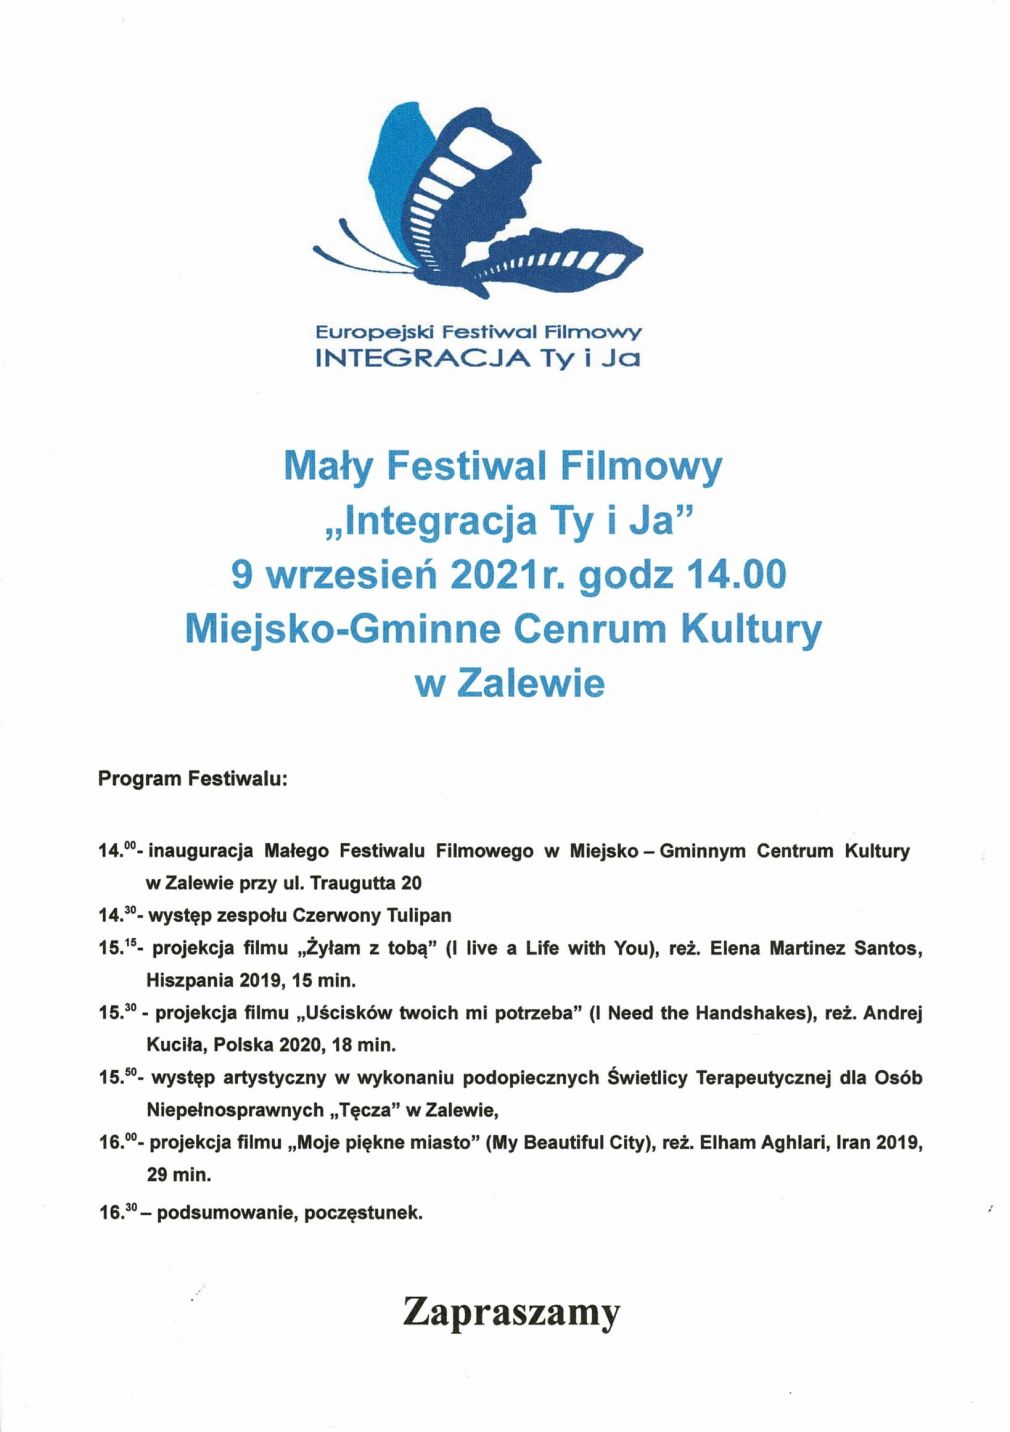 Zaproszenie na Festiwal Filmowy "Integracja Ty i Ja" do Miejsko - Gminnego Centrum Kultury